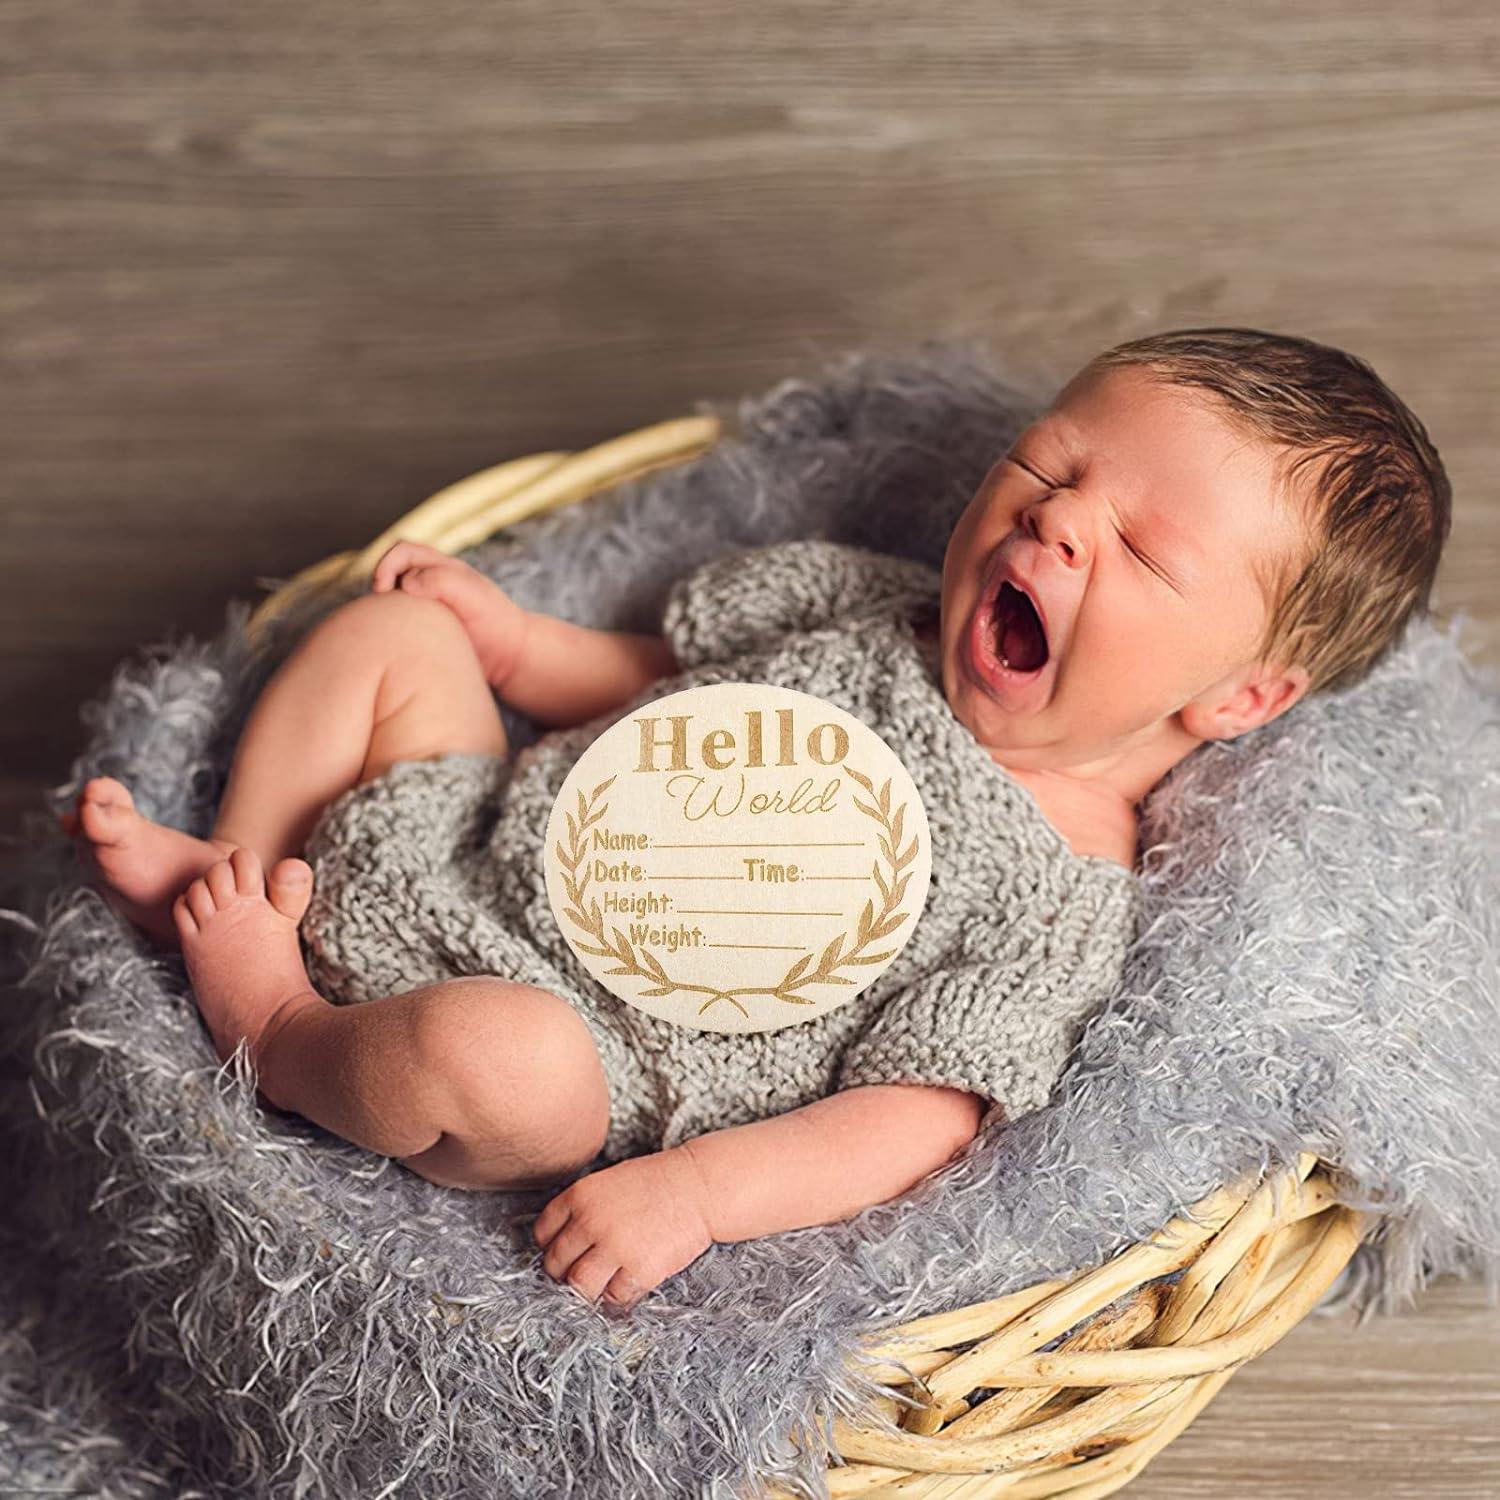 Letrero de anuncio de bebé, letrero de Hello World para recién nacido,  letrero de nombre de bebé, letrero de anuncio de nacimiento para foto